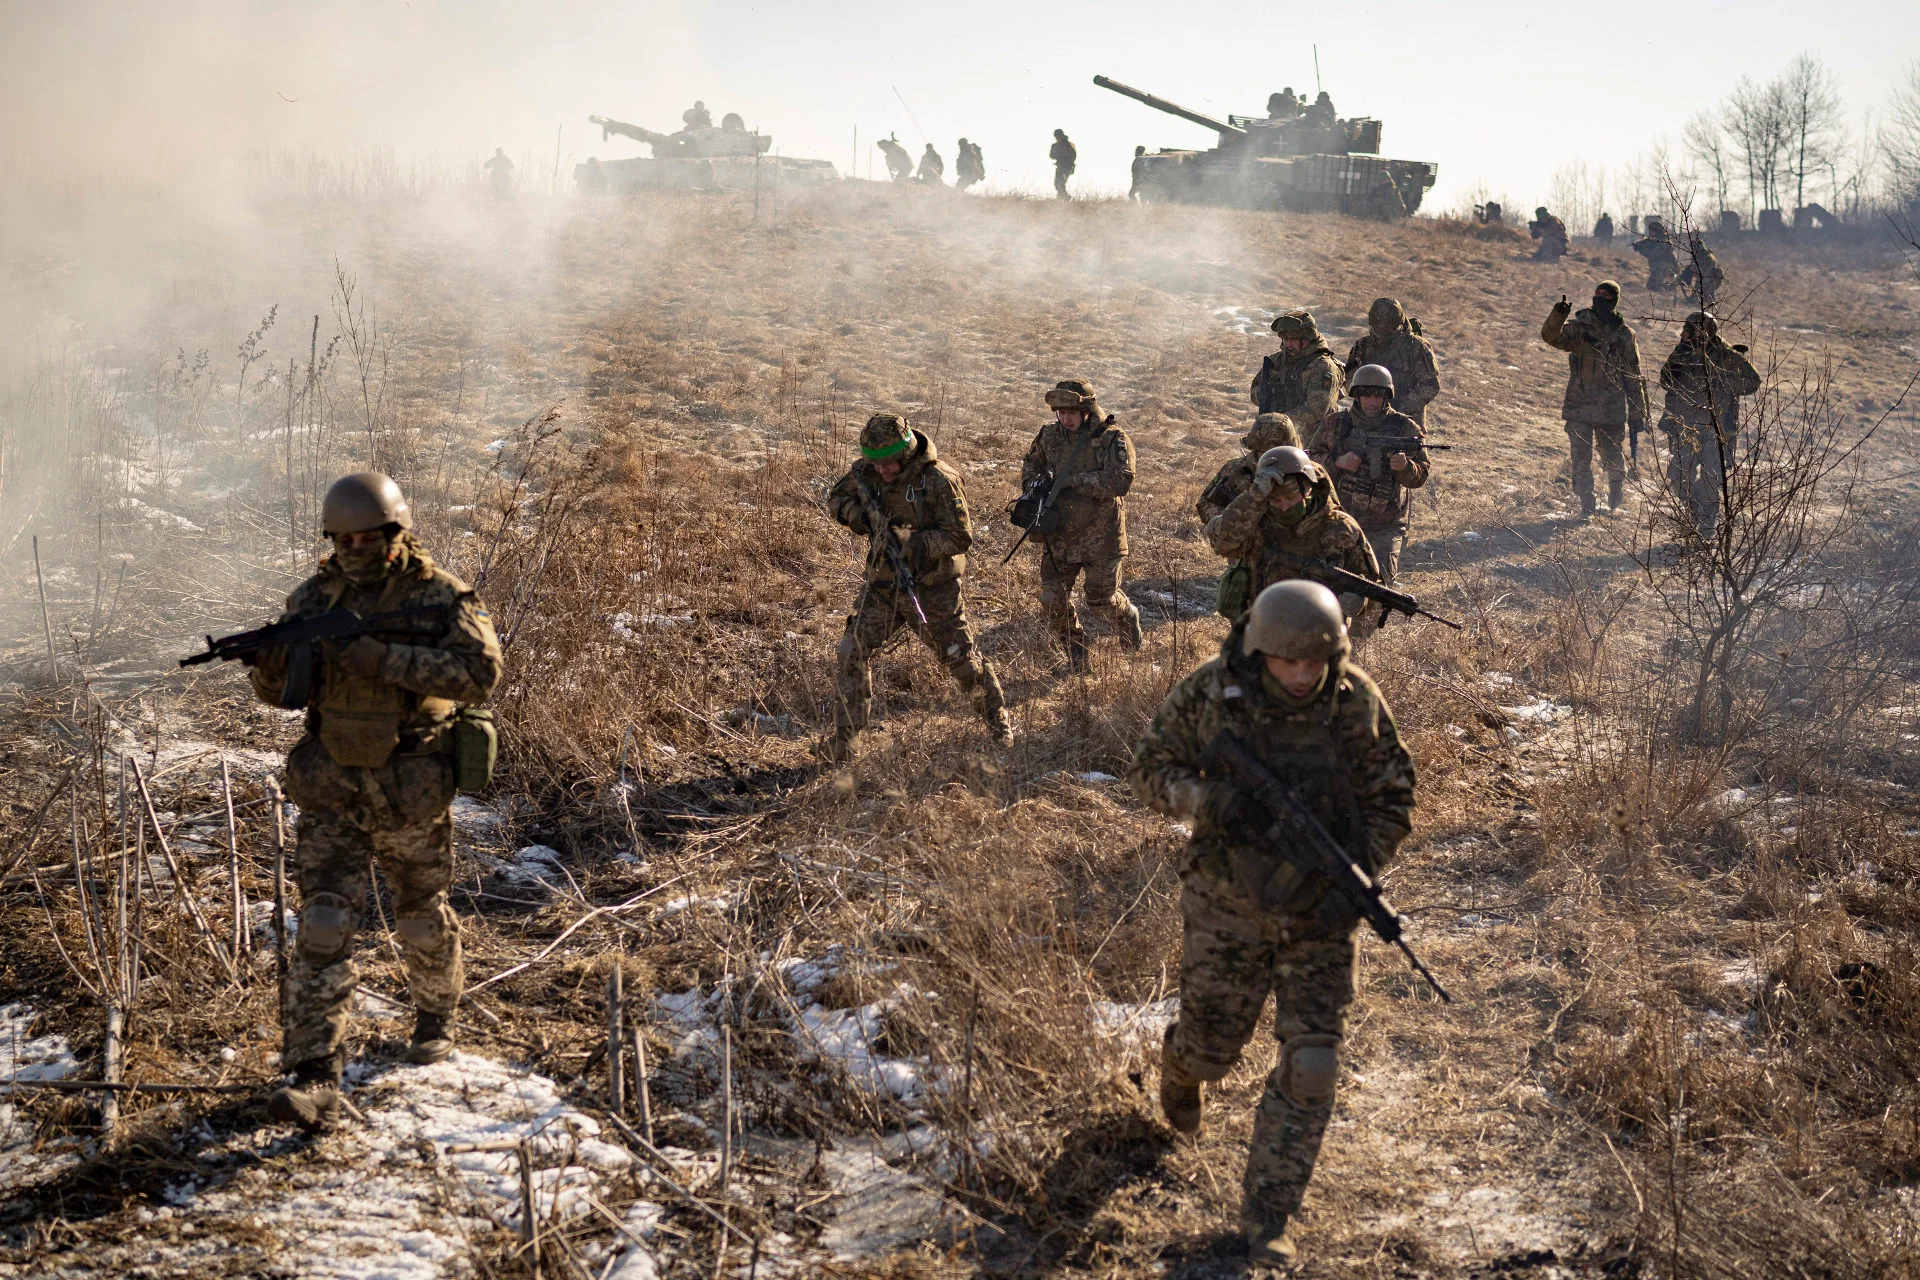 Η Ουάσινγκτον προετοιμάζεται για το ενδεχόμενο αποτυχίας της ουκρανικής αντεπίθεσης: «Έχουν εξαντλήσει τις δυνατότητές τους»